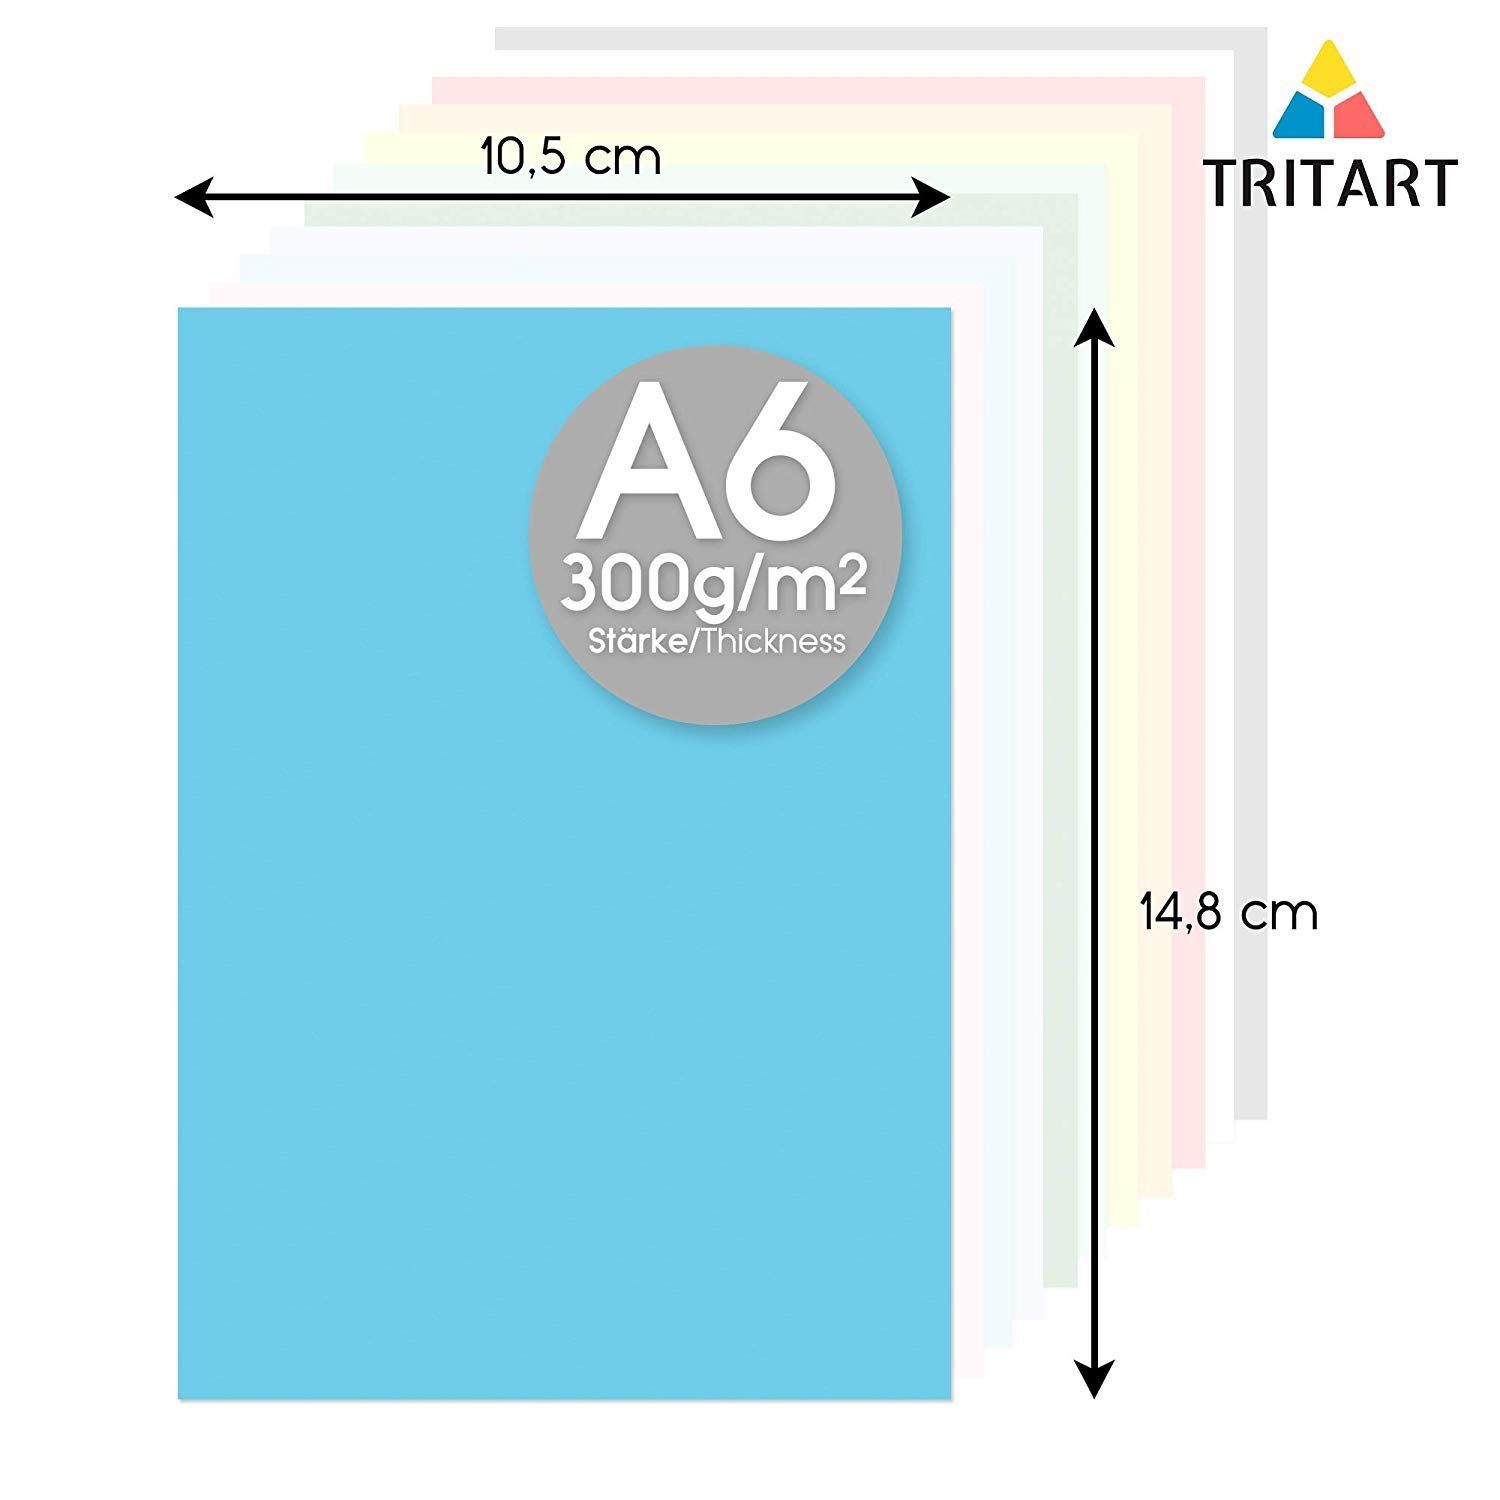 Tritart Aquarellpapier Blatt Farben A6 126 in - 126 A6 300g Bastelpapier 21 Bastelpapier, 300g Buntpapier Festes - Blatt